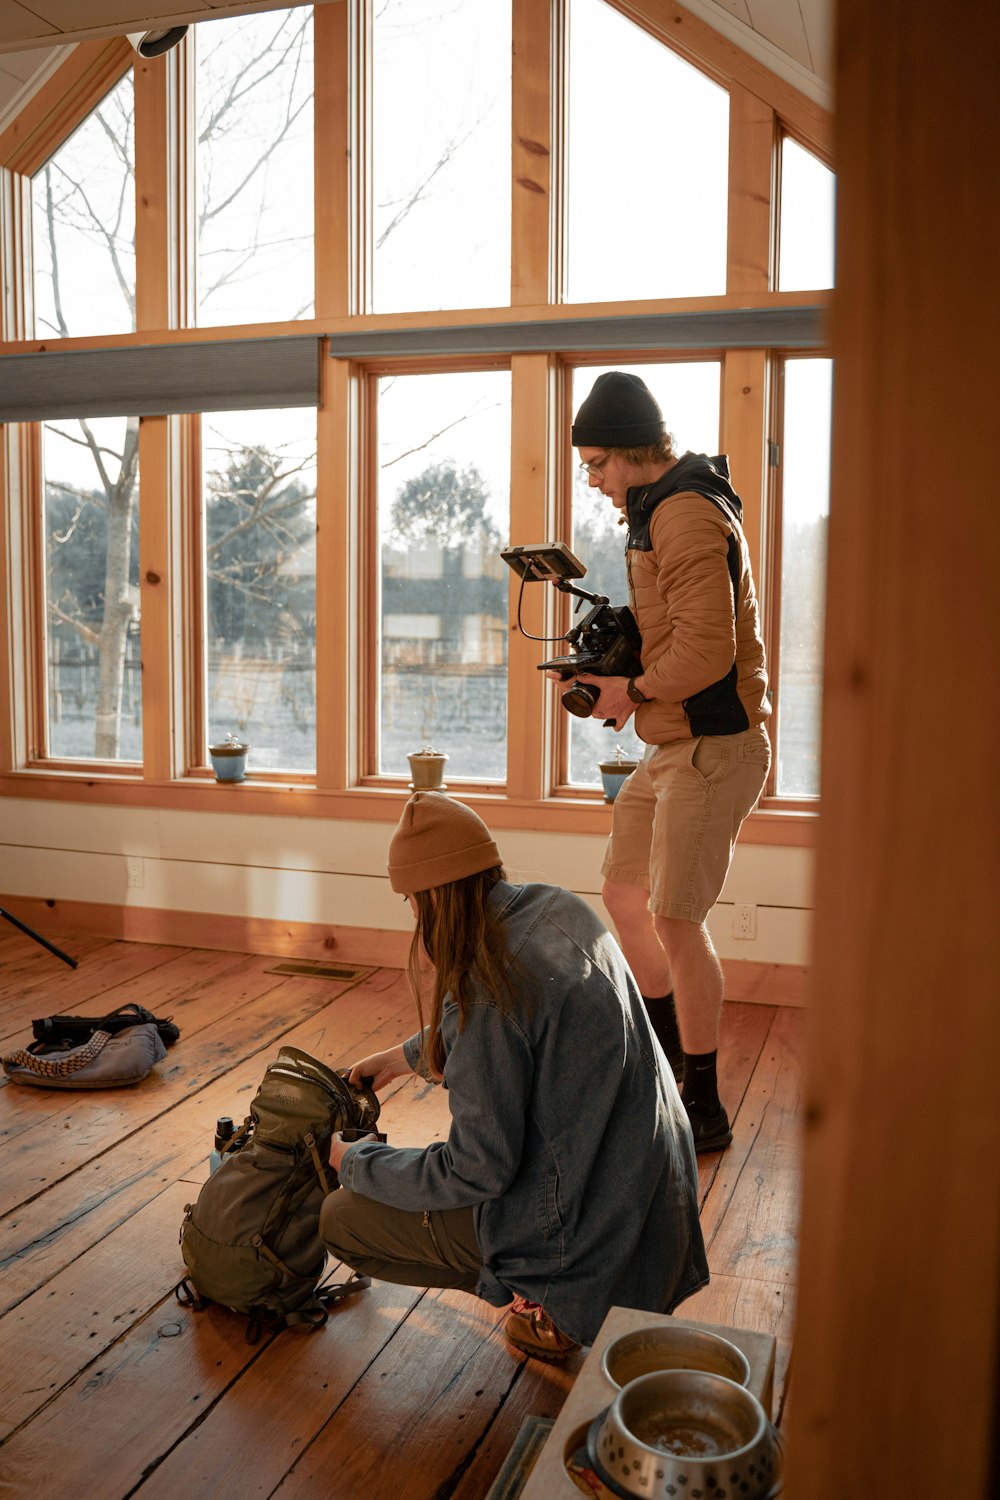 hombre con sudadera con capucha gris tomando foto de una ventana de vidrio con marco de madera marrón